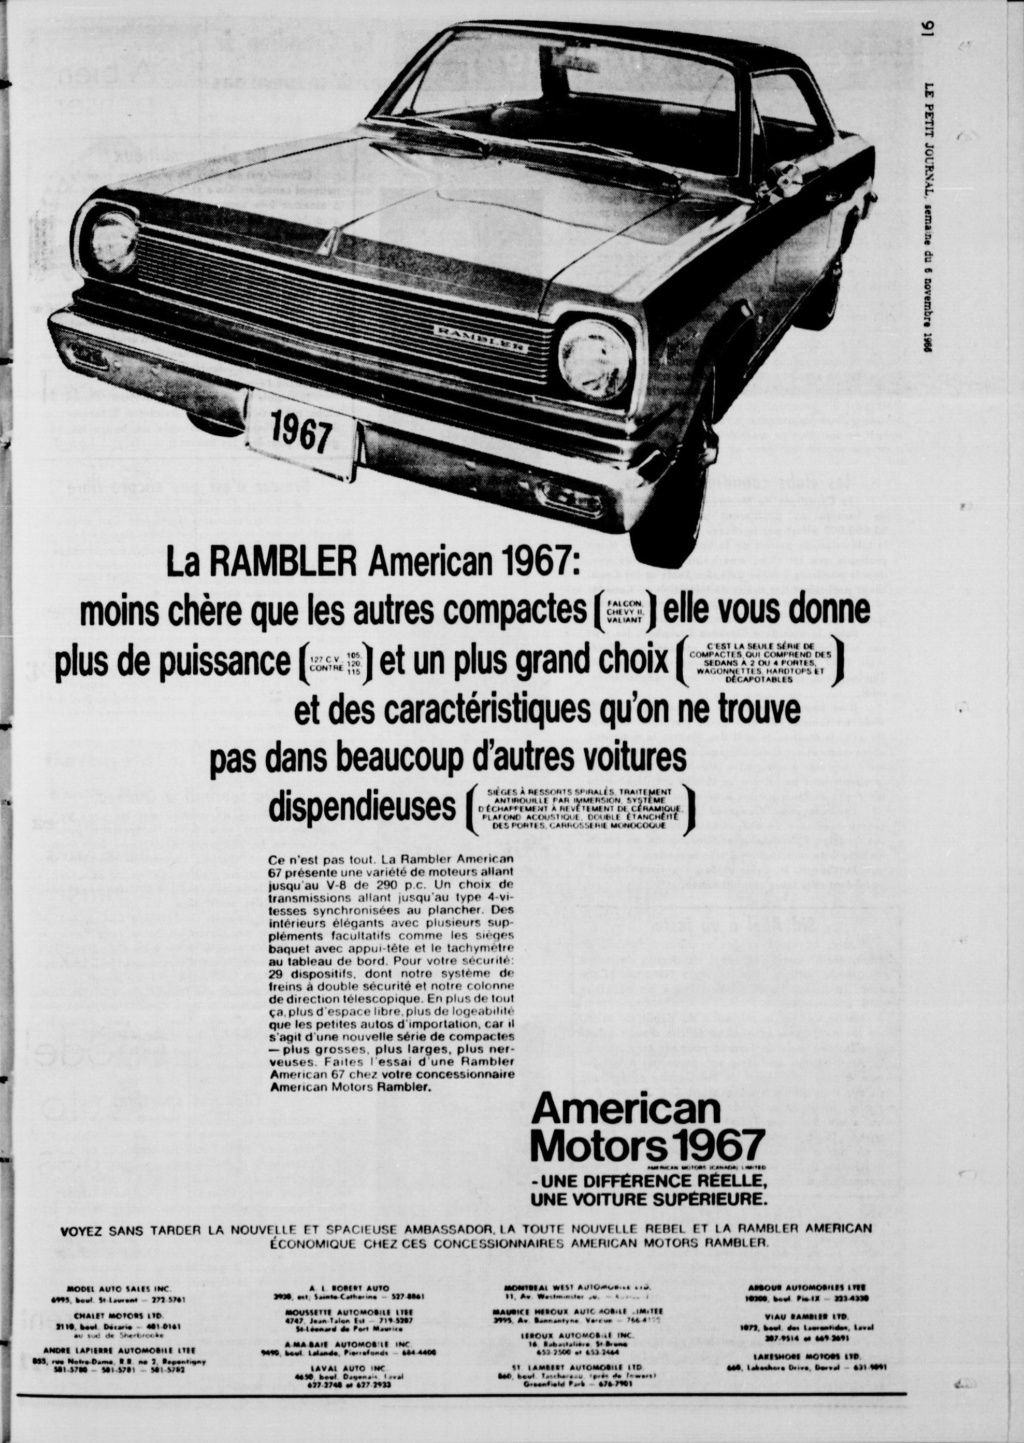 Vieilles publicités AMC au Québec - Page 2 Image224